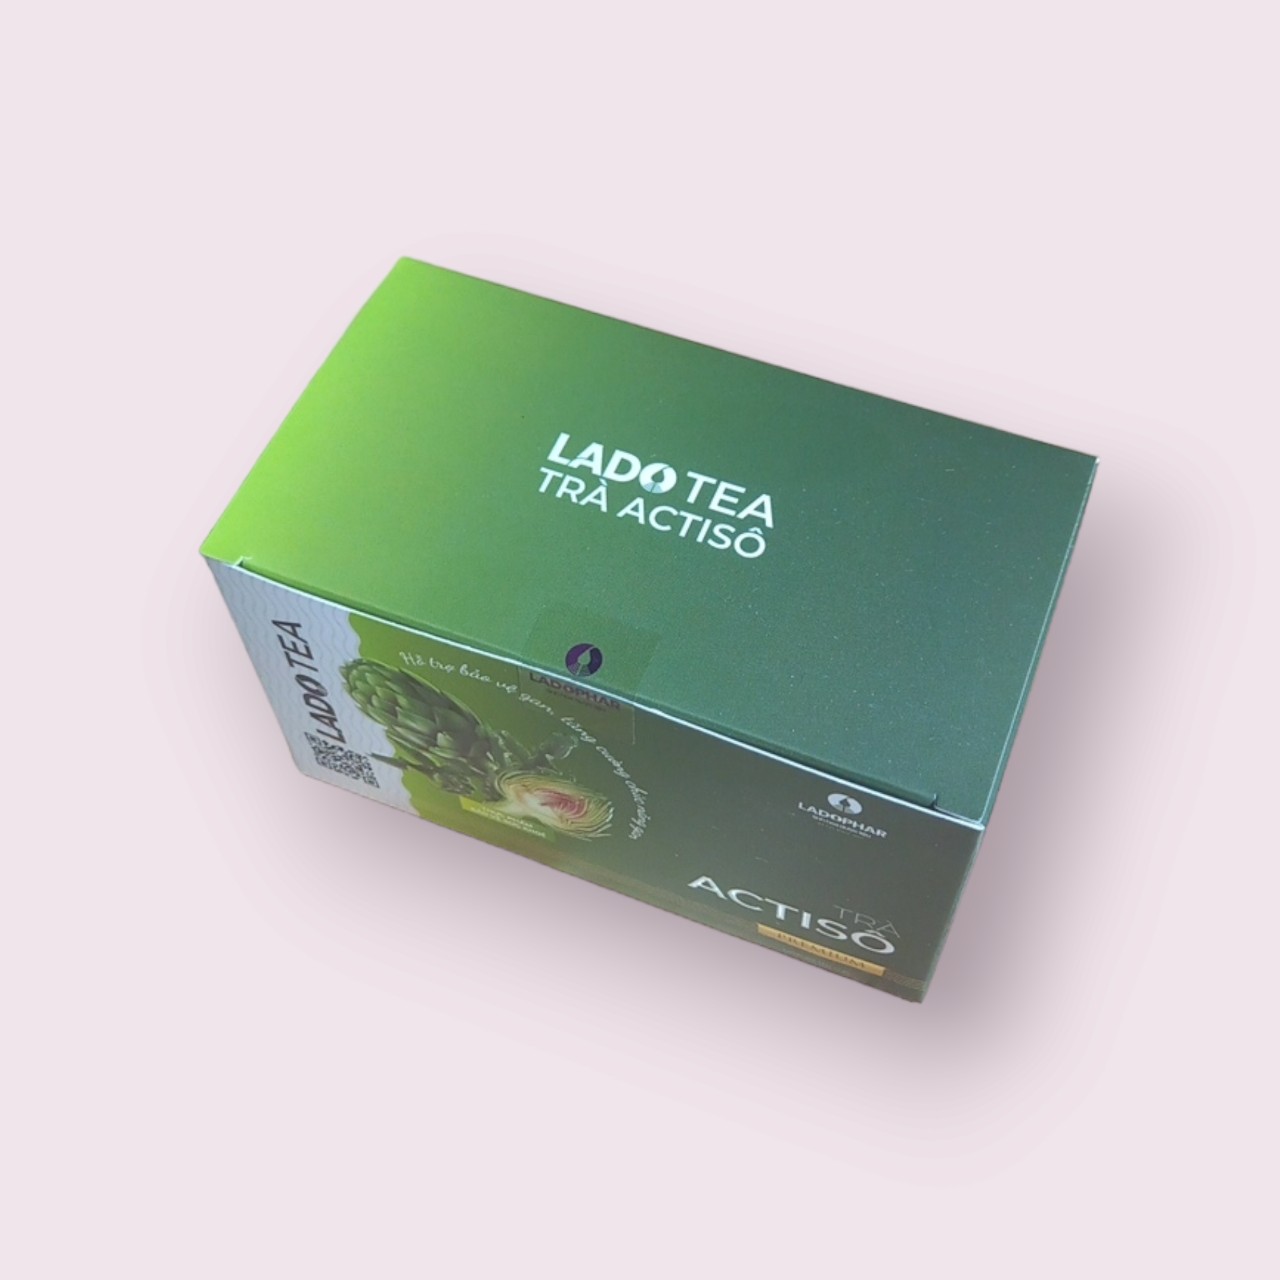 Trà Atiso Premium Ladophar Hộp 20 túi lọc Hỗ trợ mát gan, tăng tiết mật, lợi tiểu tặng 1 túi trà